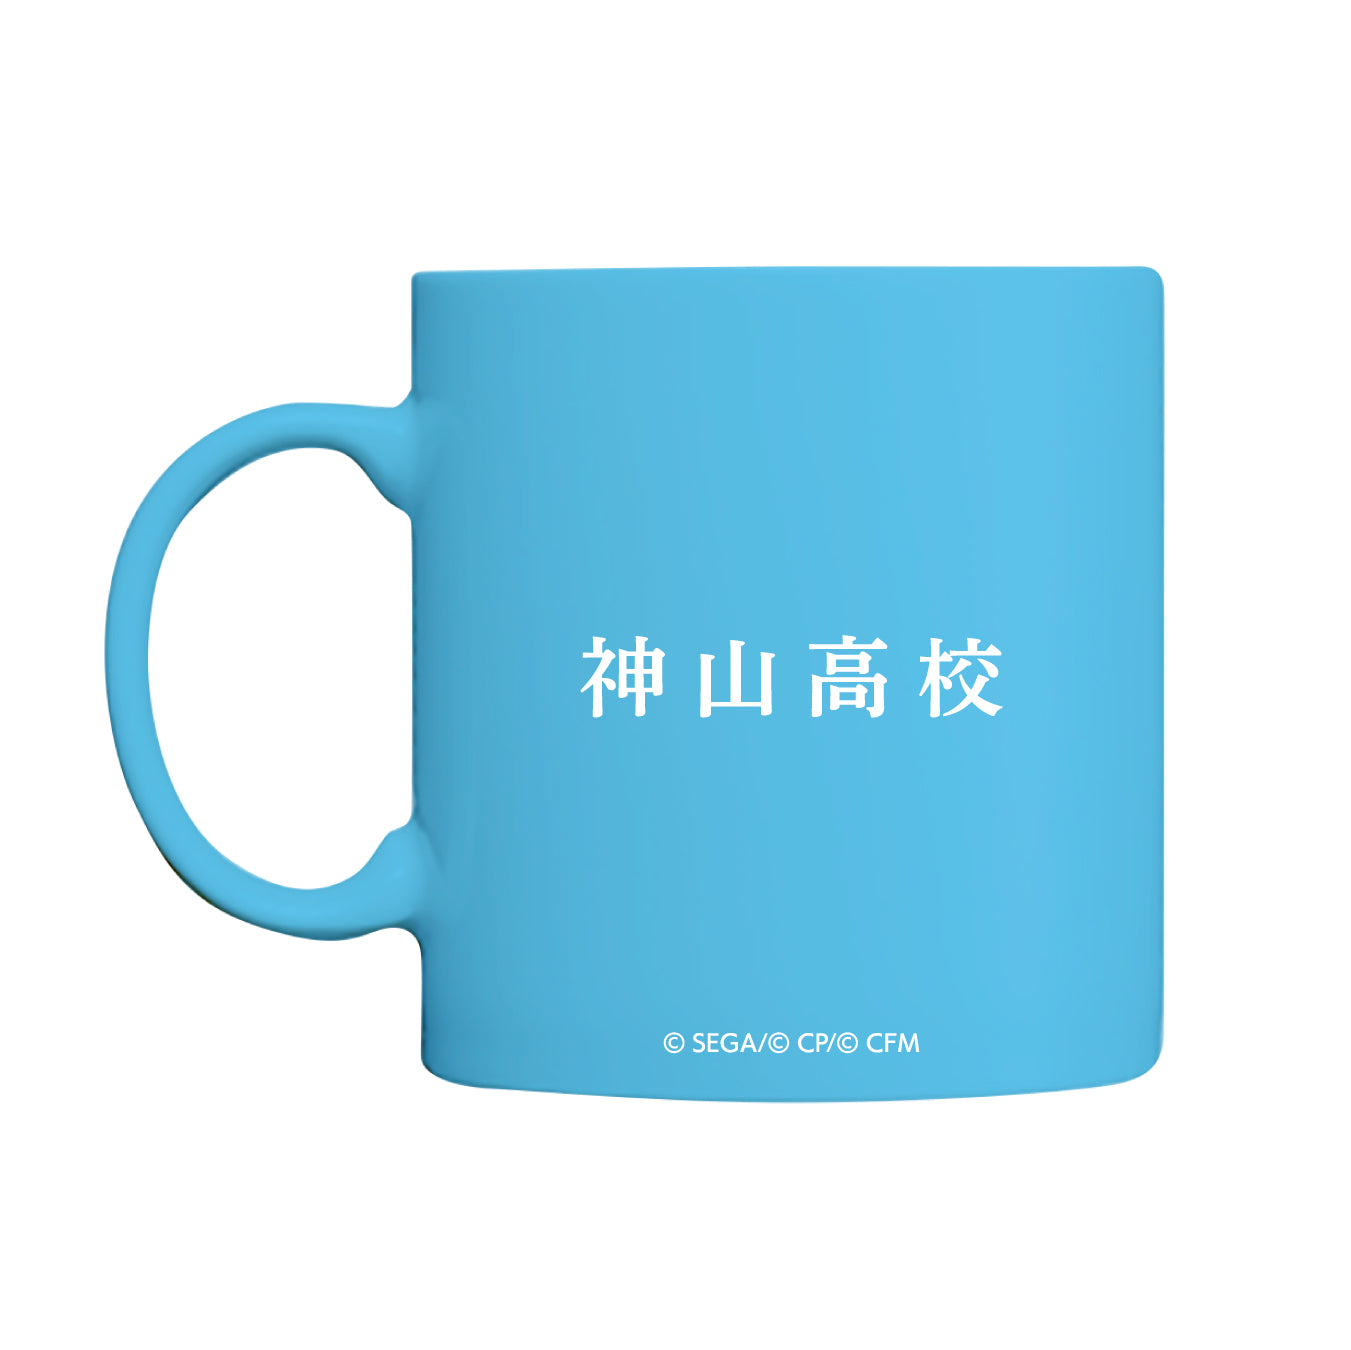 【予約商品】神山高校 マグカップ